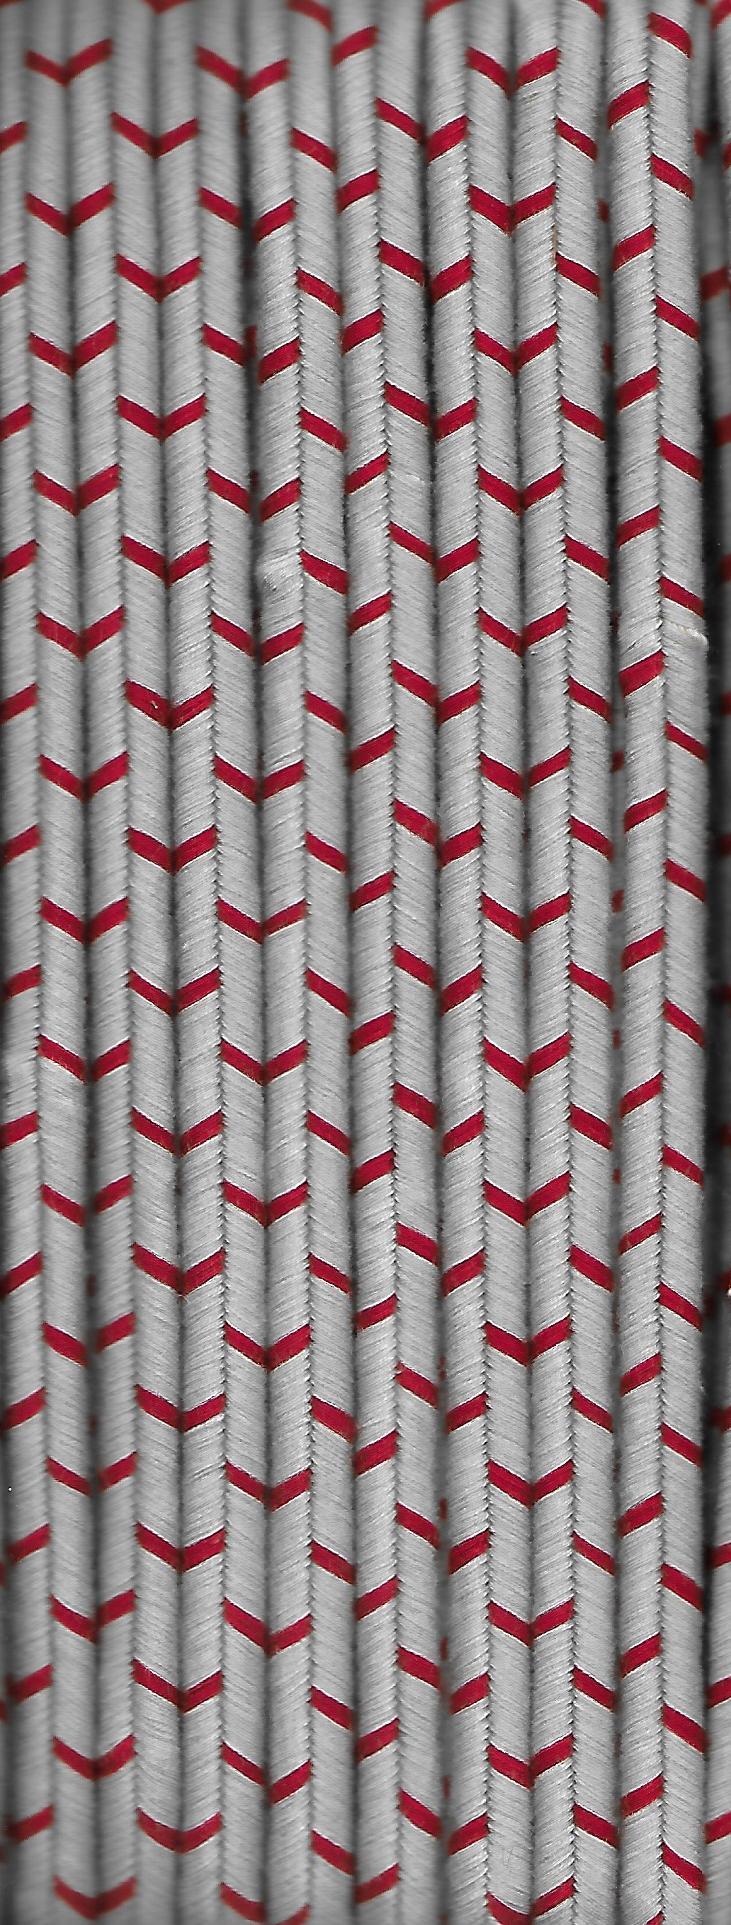 Flachkordel, Baumwolle, zweifach, grau mit roten Streifen